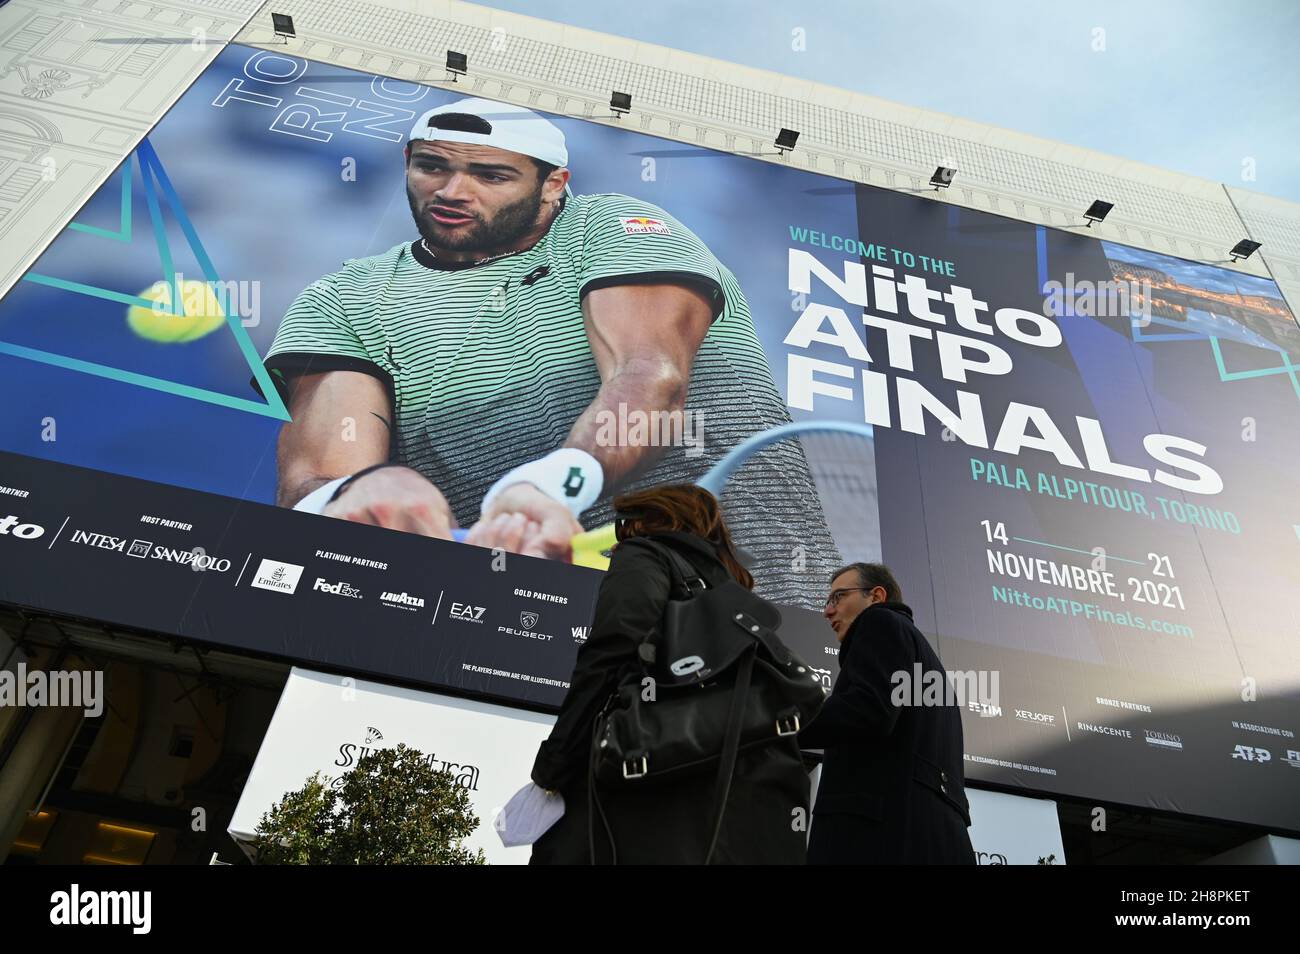 TORINO, ITALIA - 02 novembre 2021: Una vista a basso angolo di un enorme cartellone nella piazza principale dà il benvenuto all'imminente torneo Nitto ATP finale, Torino, Italia Foto Stock